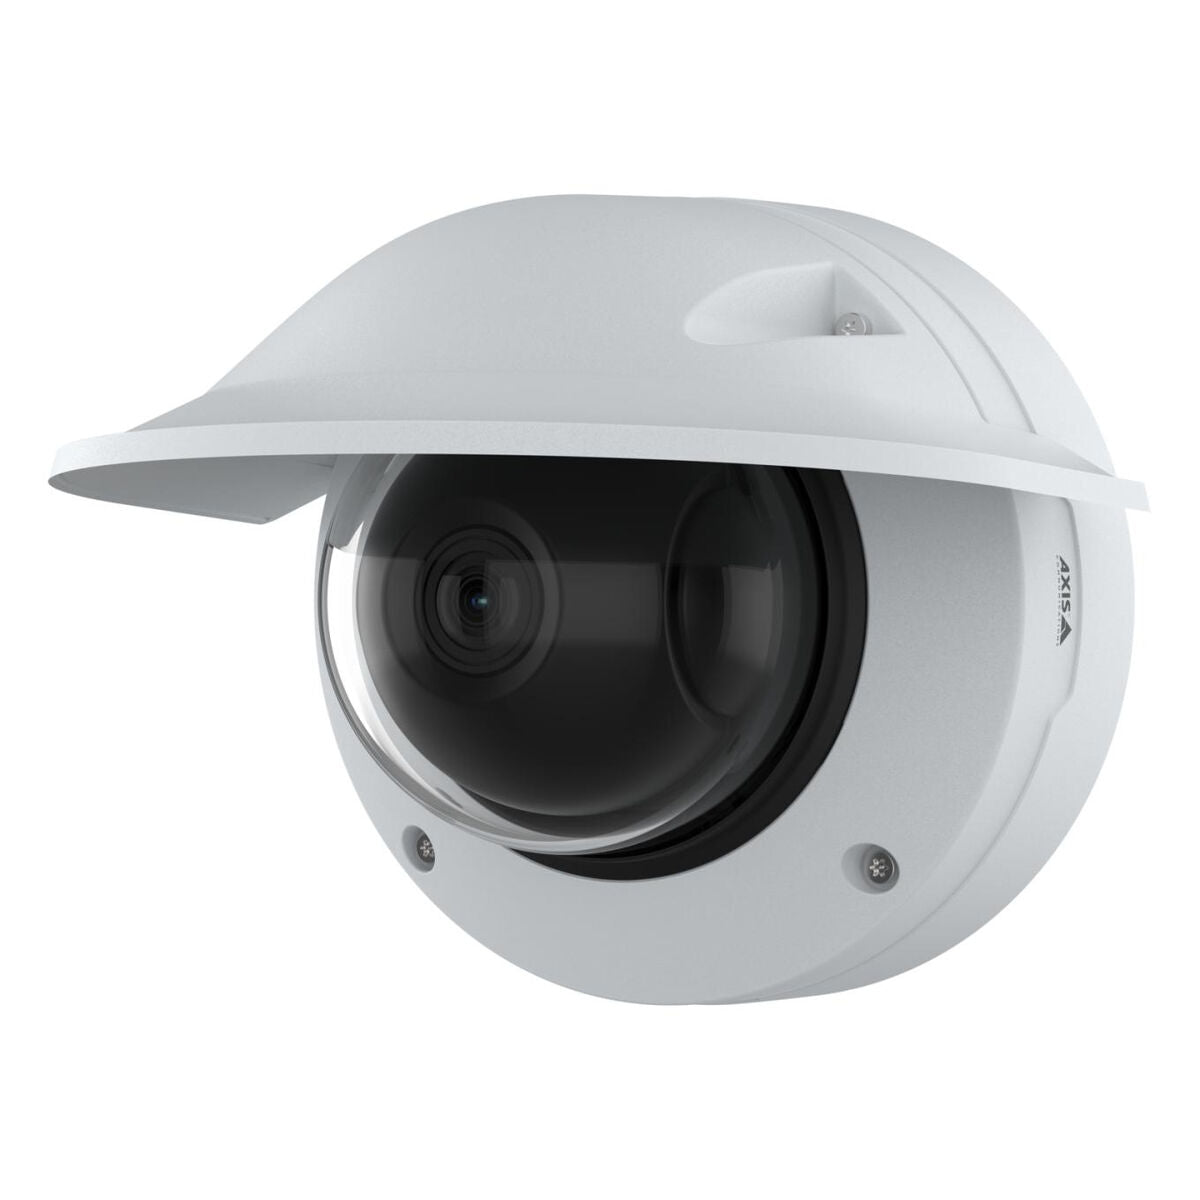 Uzraudzības Videokameras Axis Q3628-VE